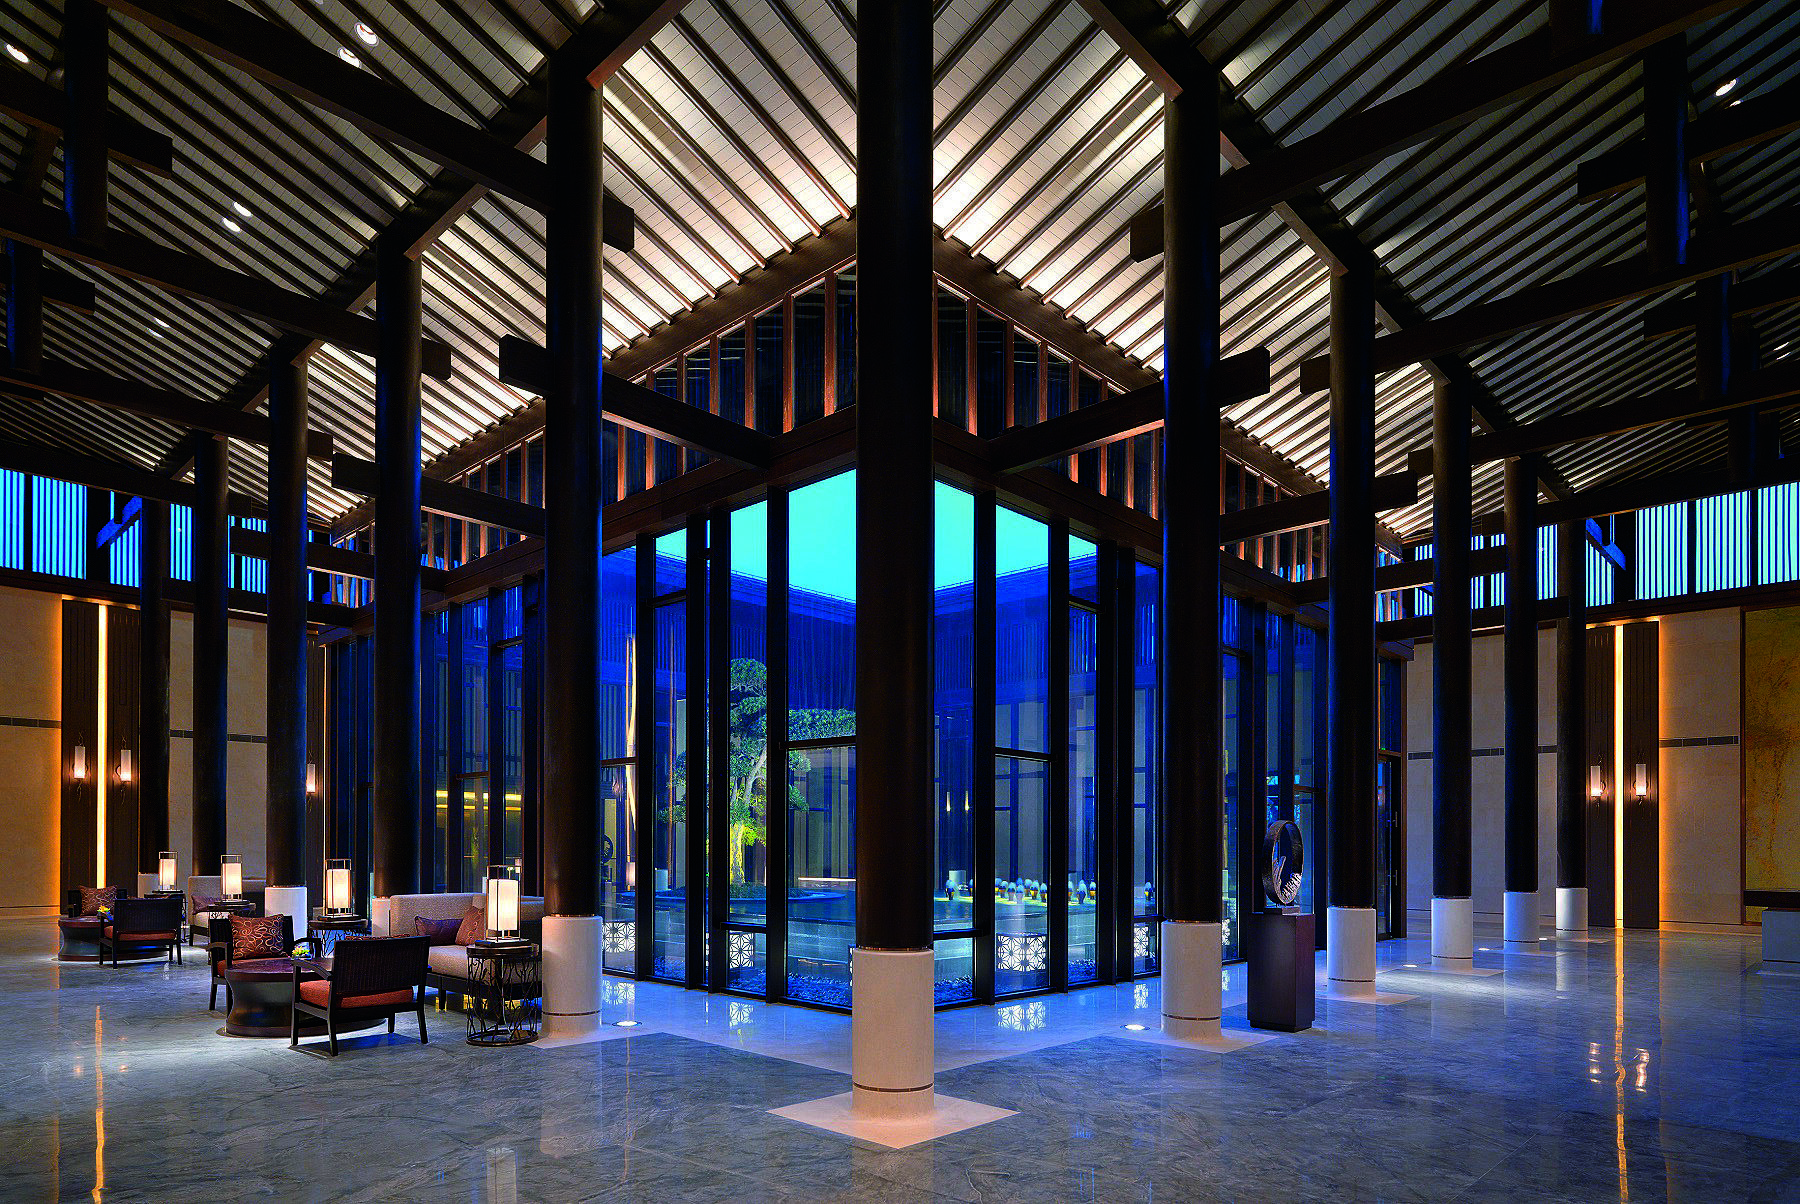 Design of Hyatt Hotel Lobby